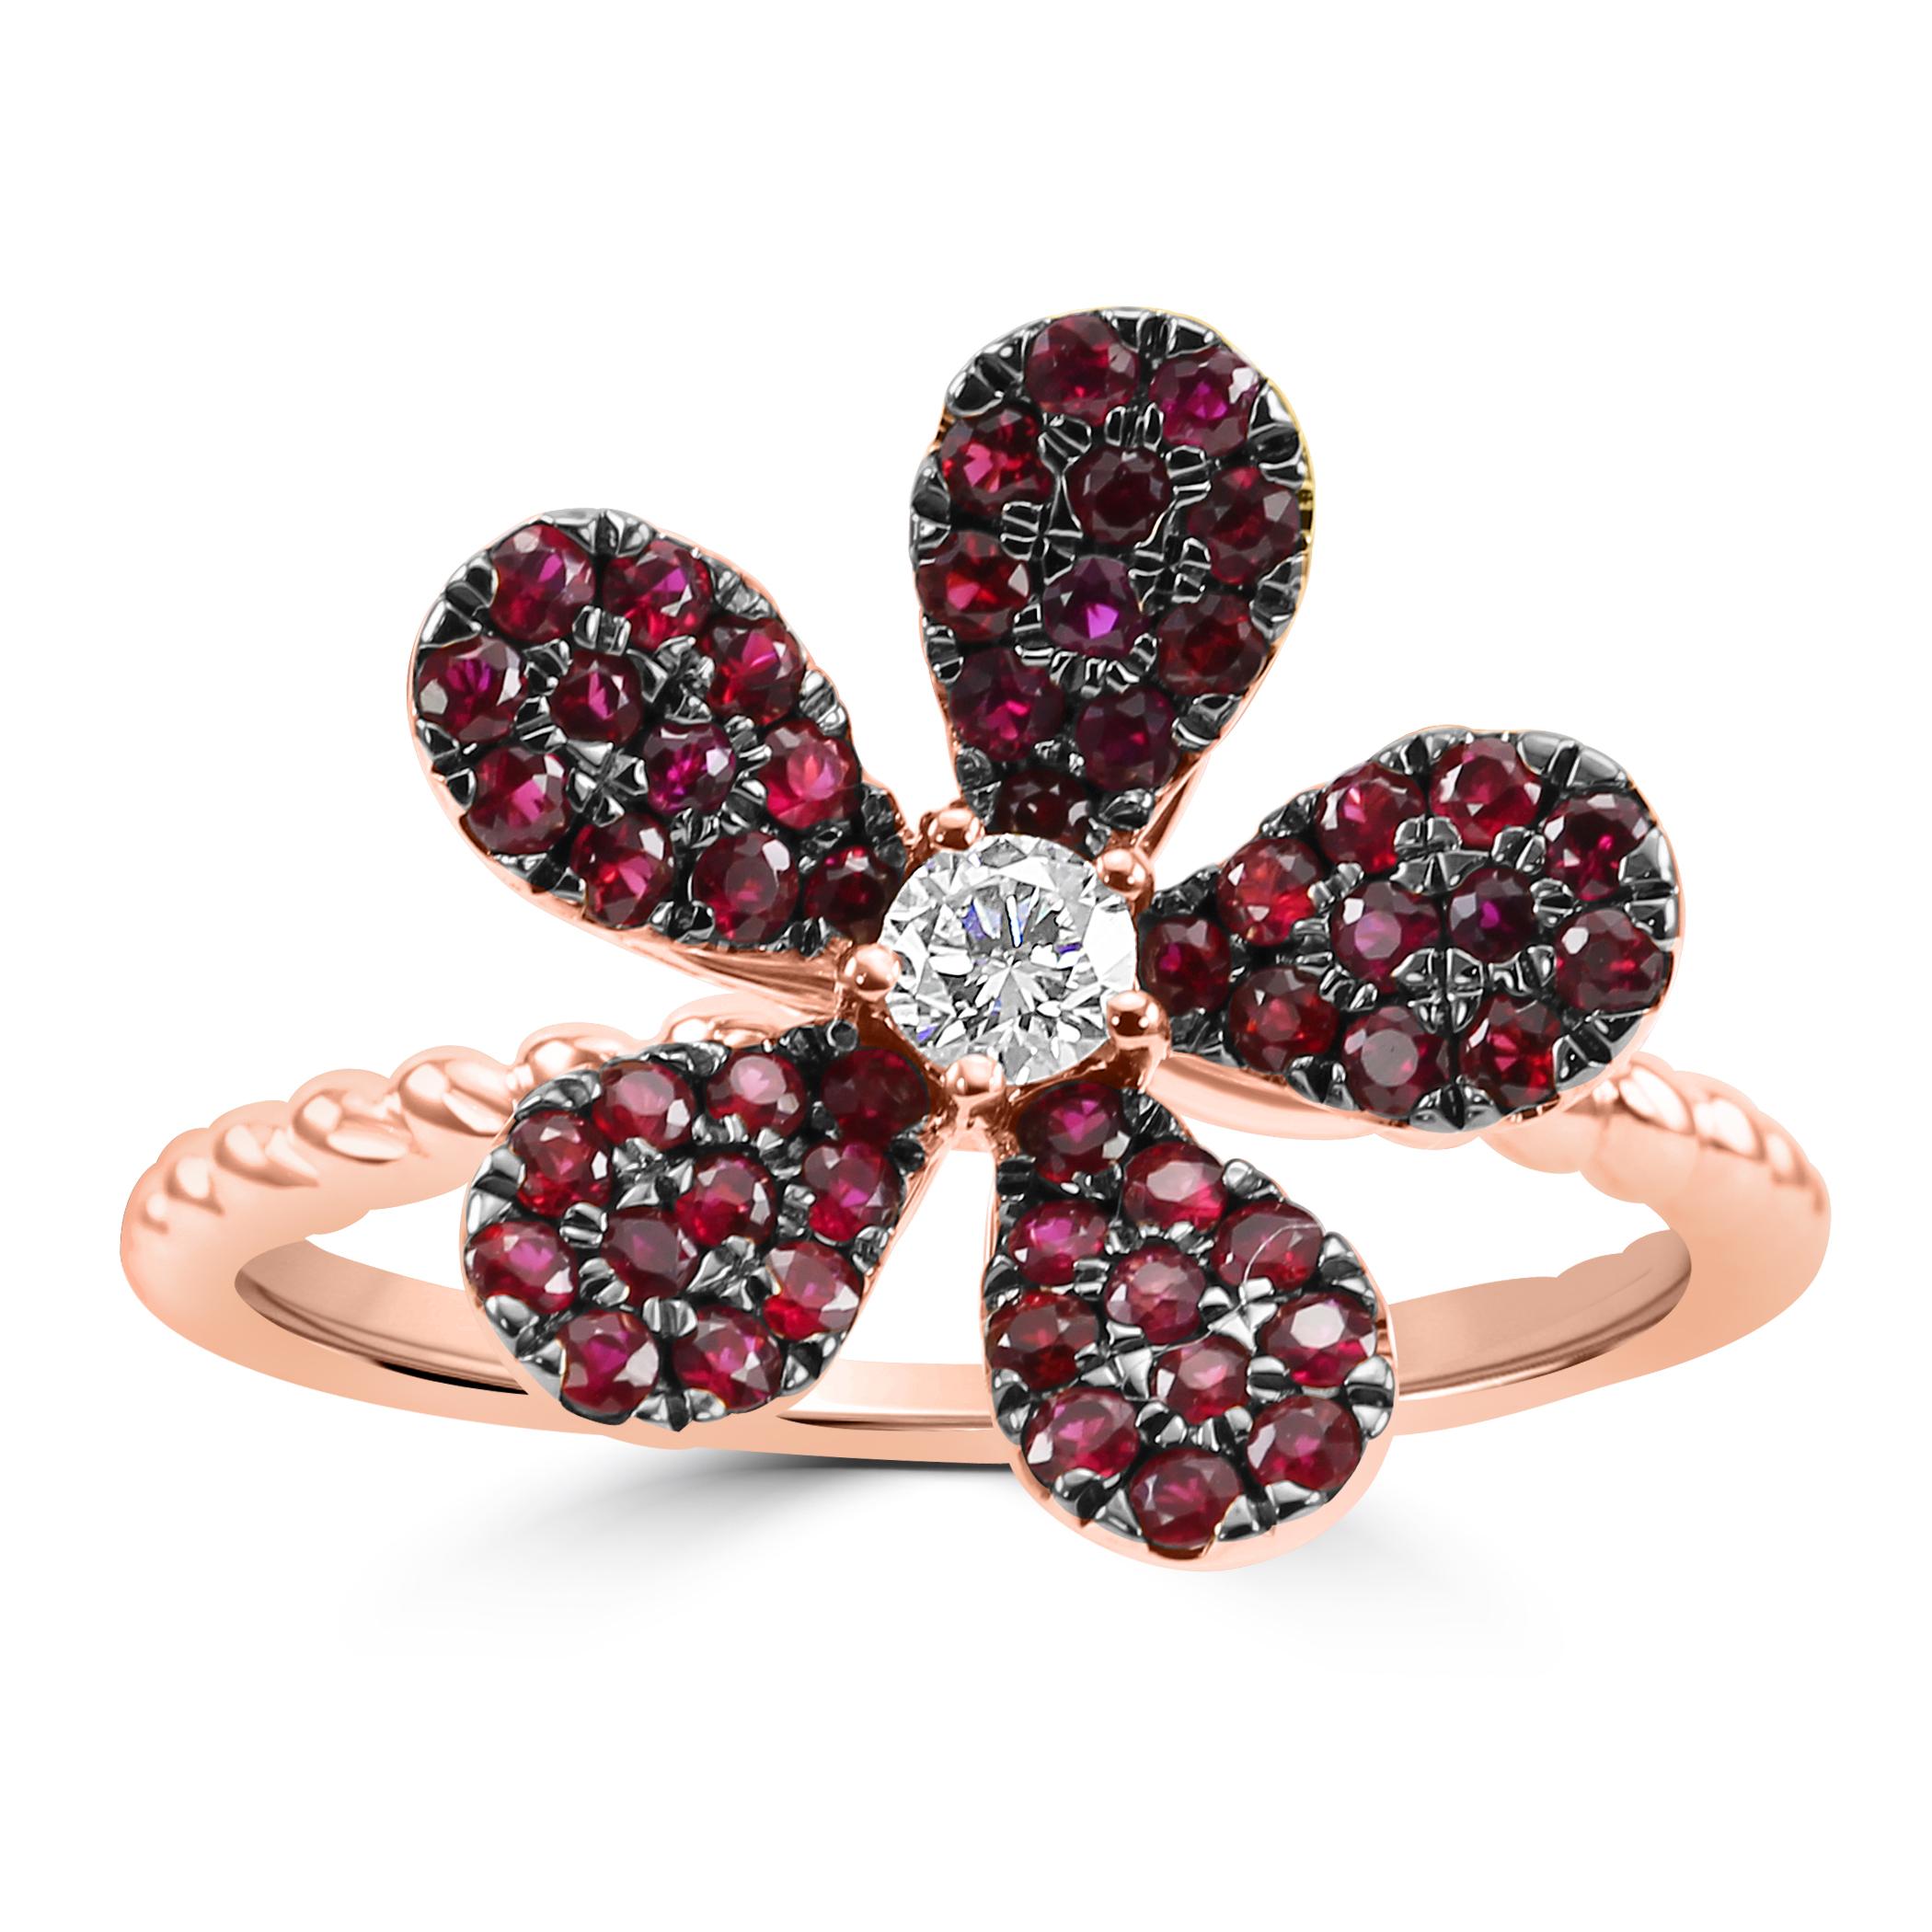 Osiyan freut sich, Ihnen unseren blumenförmigen Ring vorzustellen, ein wahres florales Meisterwerk, das durch die Lebendigkeit von 55 bezaubernden Rubinsteinen von insgesamt 0,66 Karat erblüht. Im Herzen dieses Blumenarrangements befindet sich ein